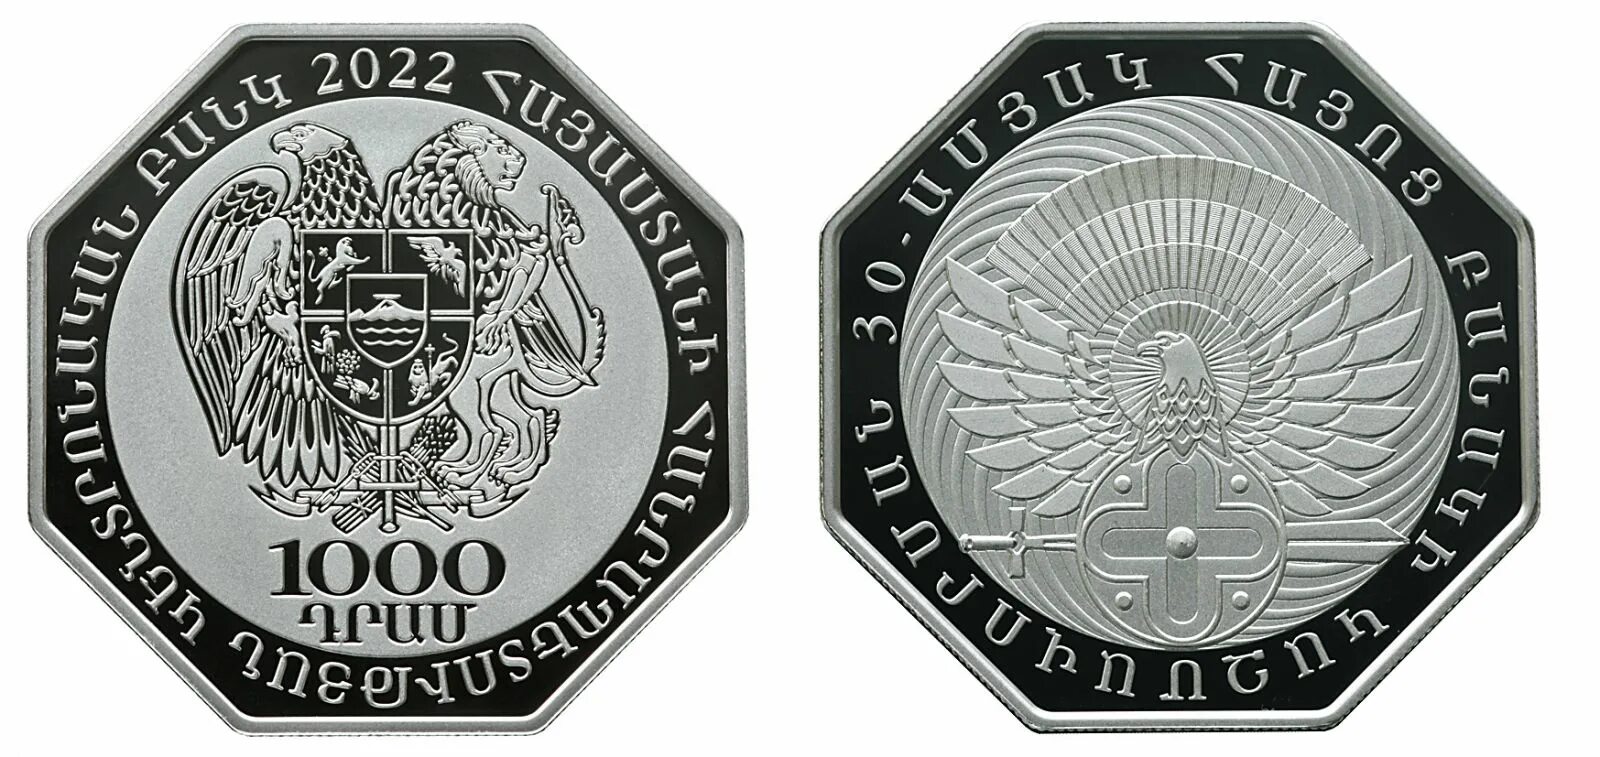 Армянские монеты 2022. Памятные армянские монеты. Герб Армении на монетах. Монеты 2022 года. 300 драмов в рублях